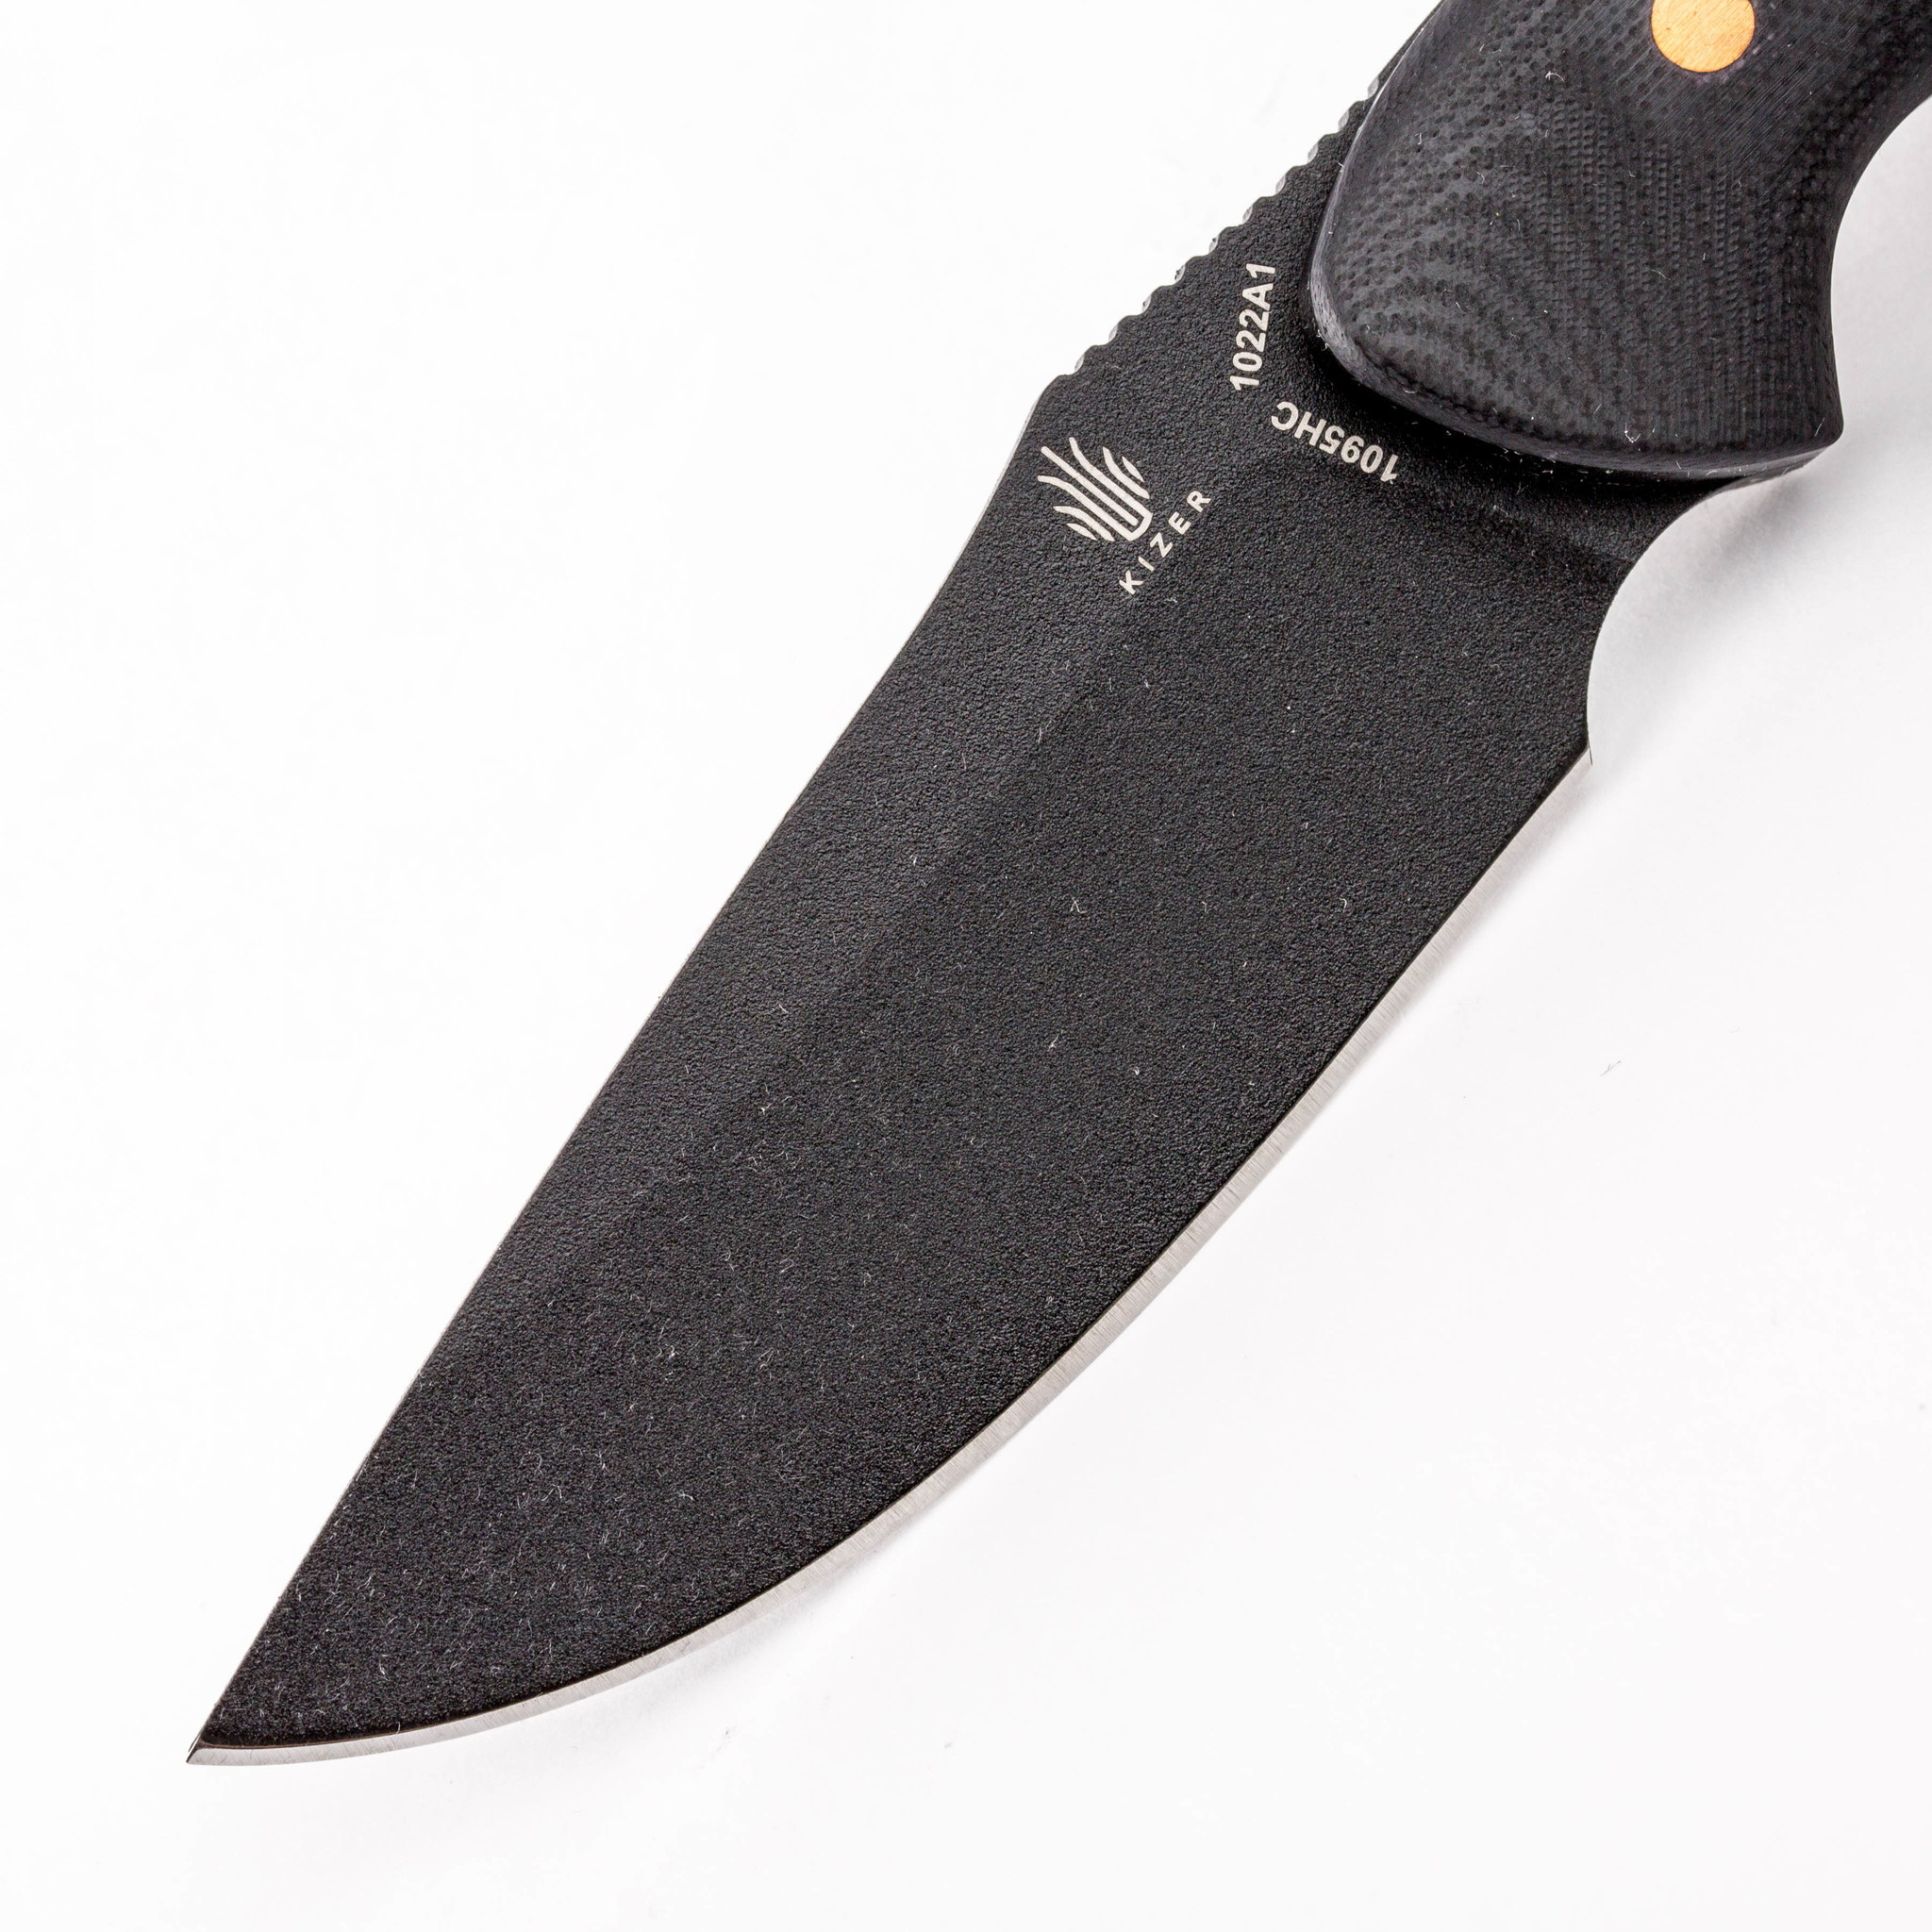 Нож Kizer Sequoia Black, сталь 1095 Carbon Steel, рукоять G10 - фото 2